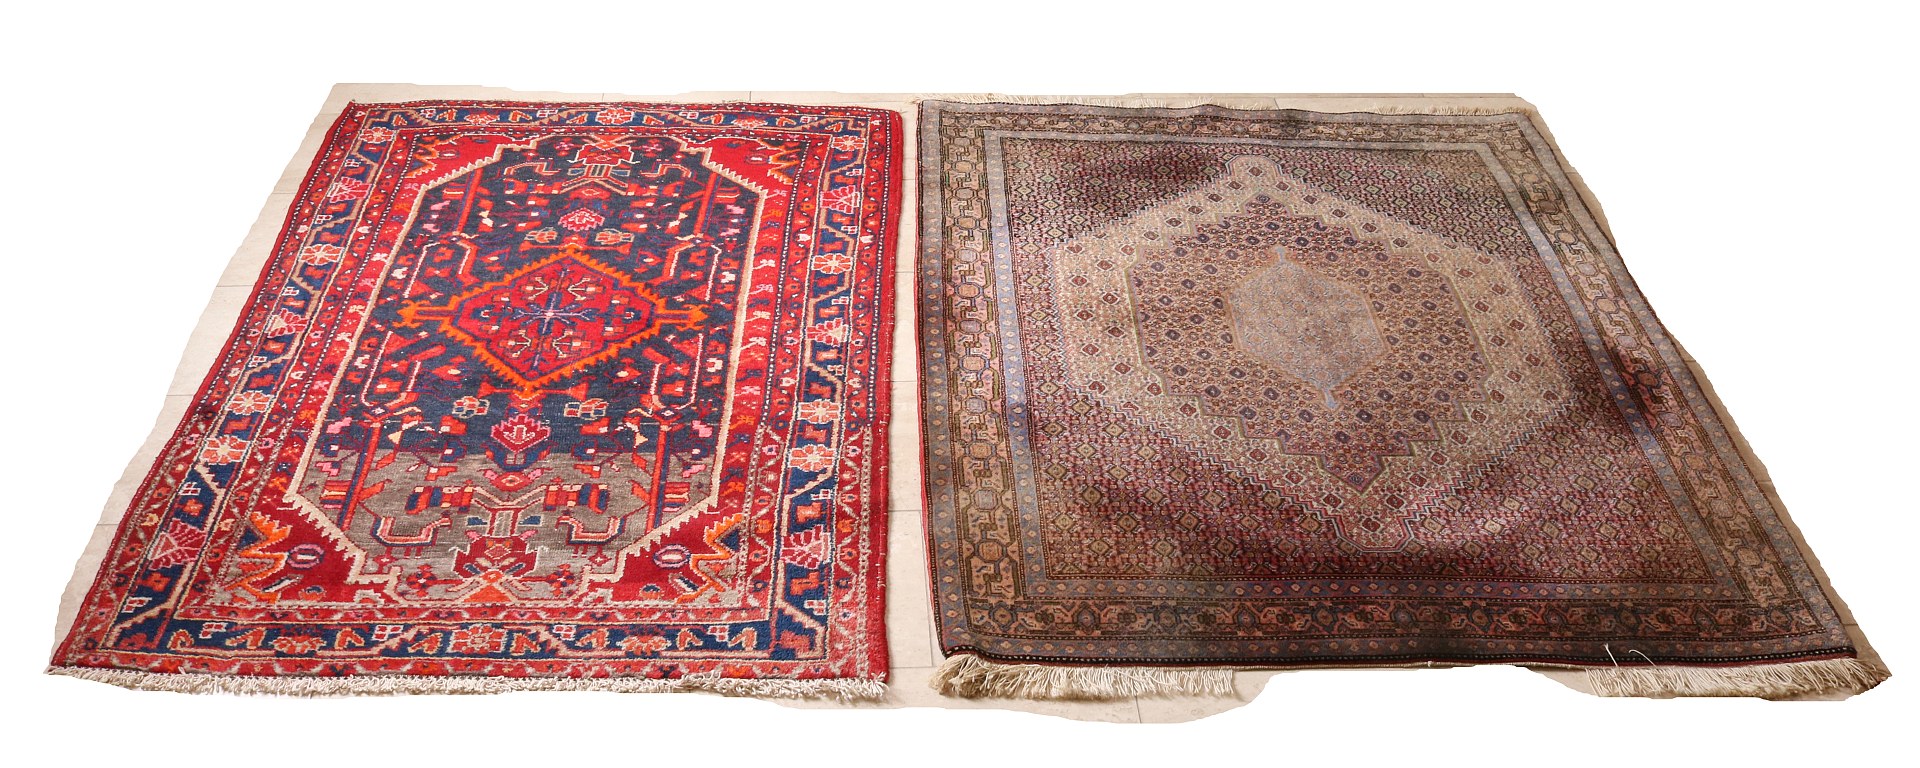 Twee oude Perzische kleden